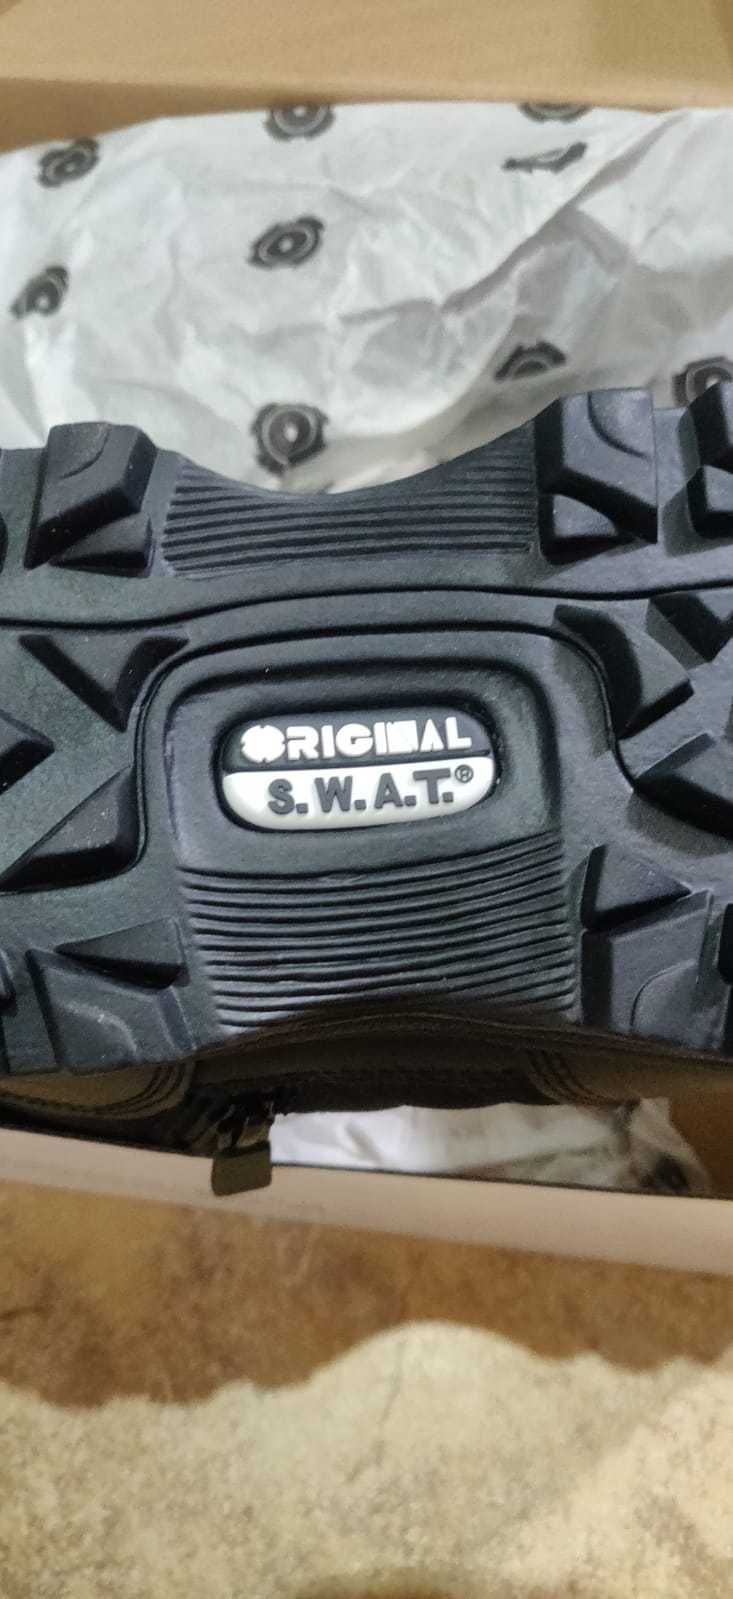 Vendo botas S.W.A.T novas